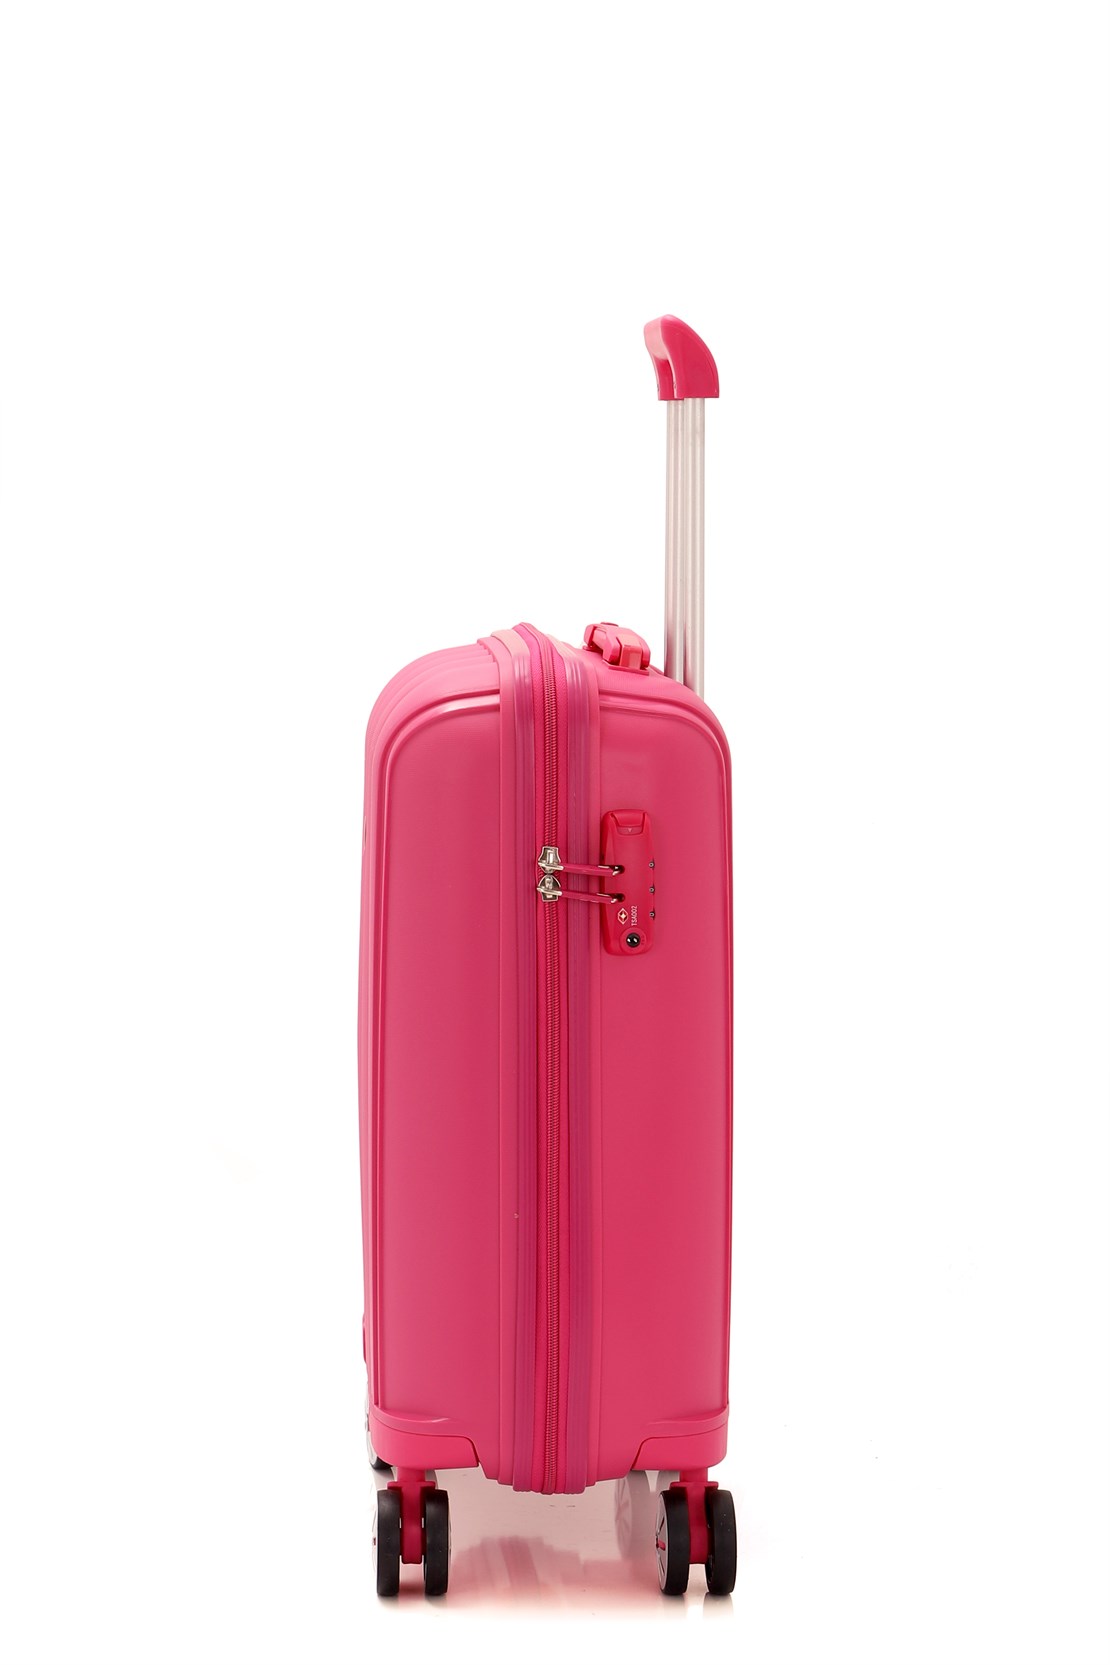 Маленький чемодан для ручьной клади из полипропилена MCS V305 S ! Для 8-10 кг! - 4